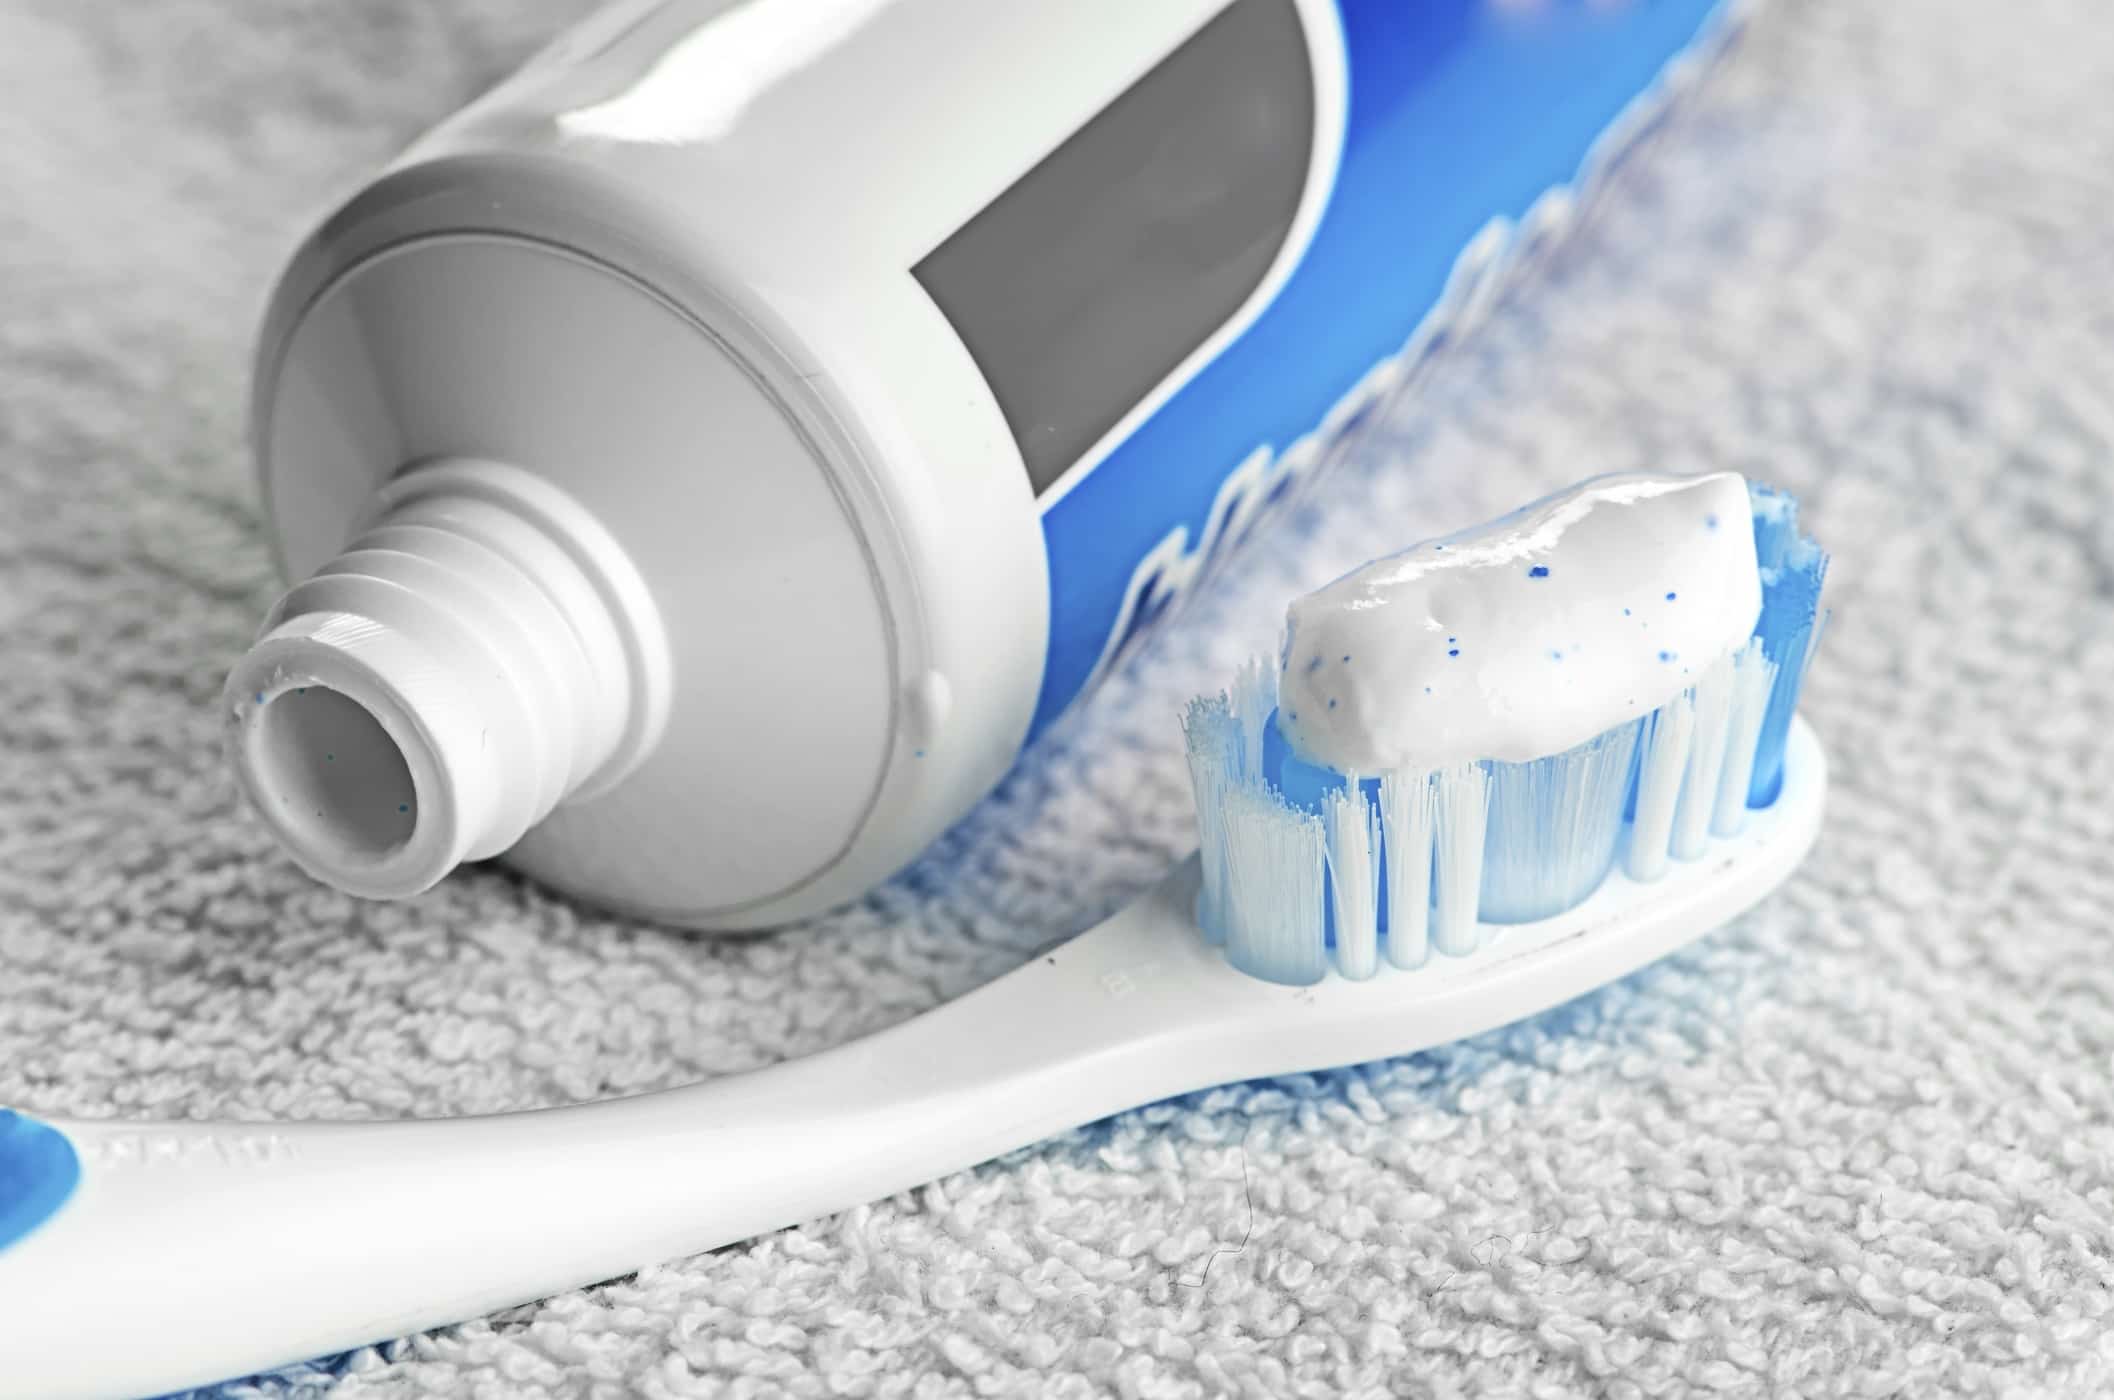 Conoscere i codici colore sulla confezione del dentifricio: cosa significa?